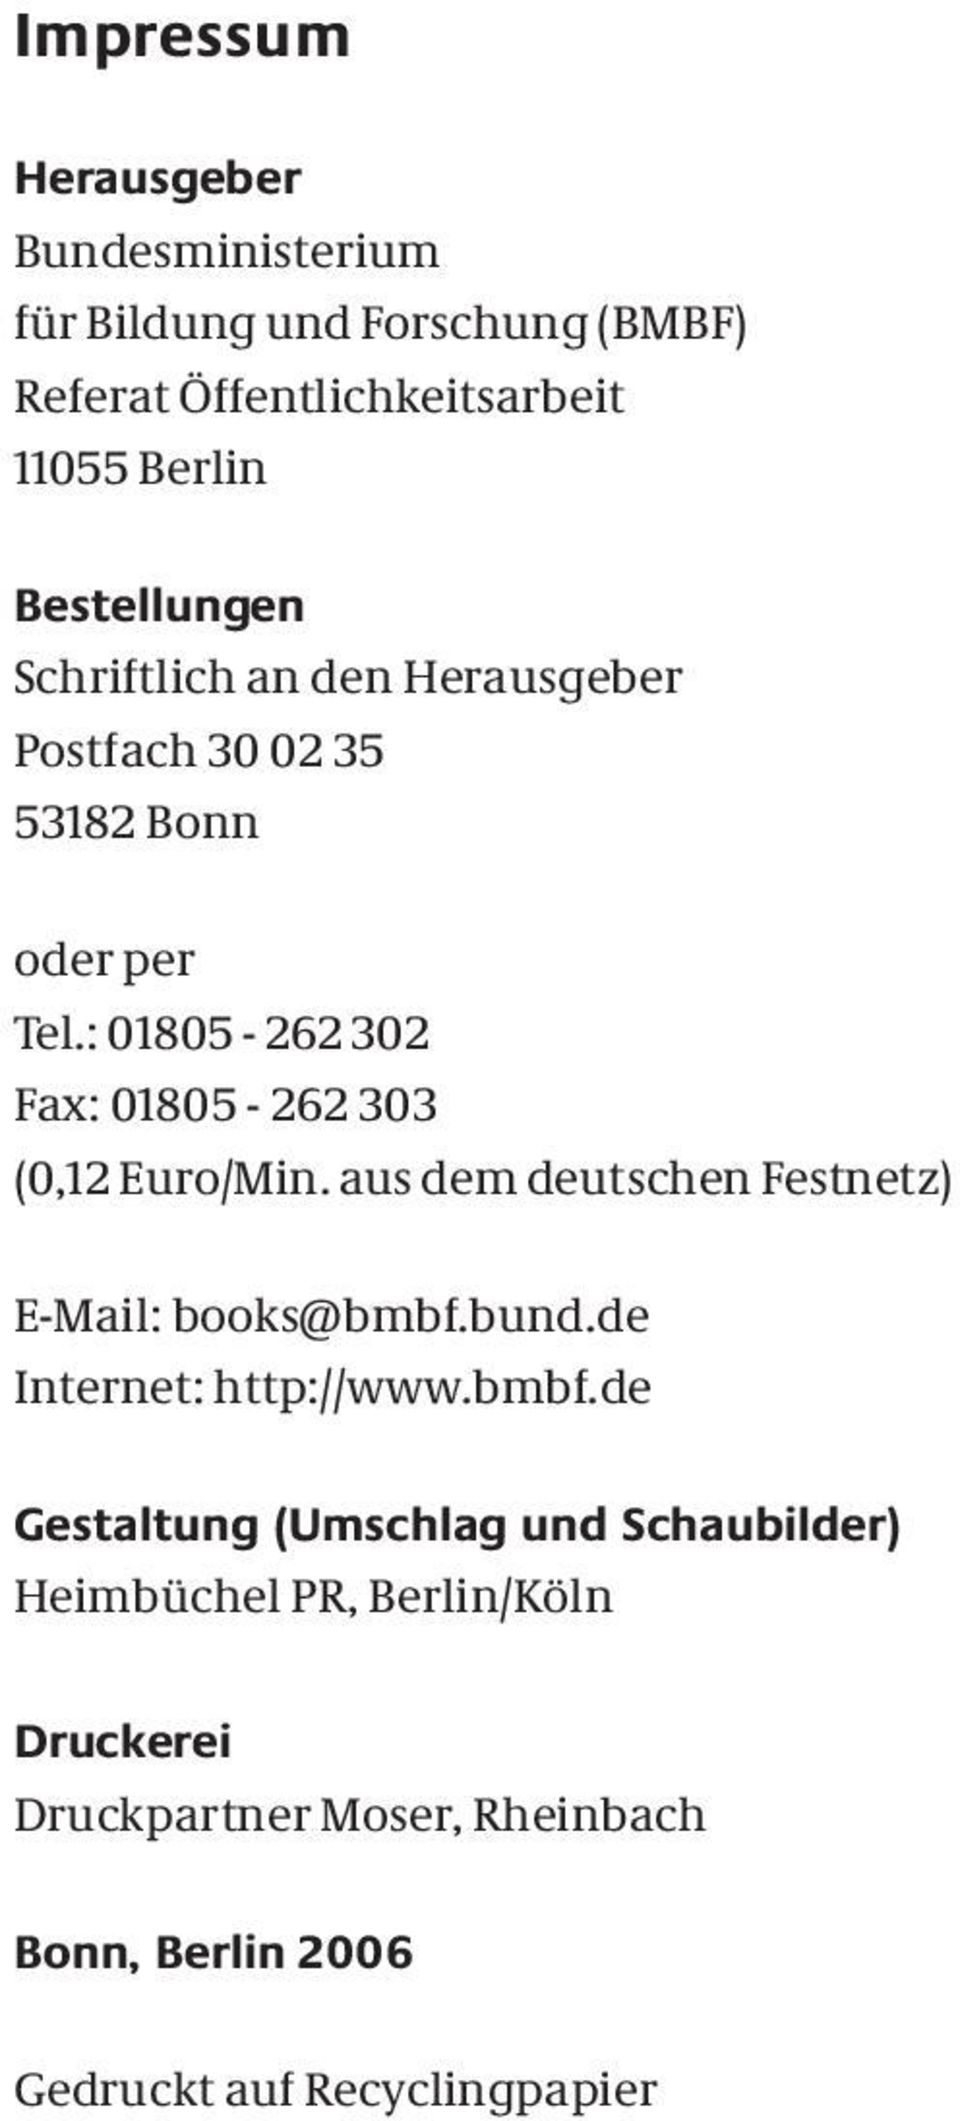 : 01805-262 302 Fax: 01805-262 303 (0,12 Euro/Min. aus dem deutschen Festnetz) E-Mail: books@bmbf.bund.